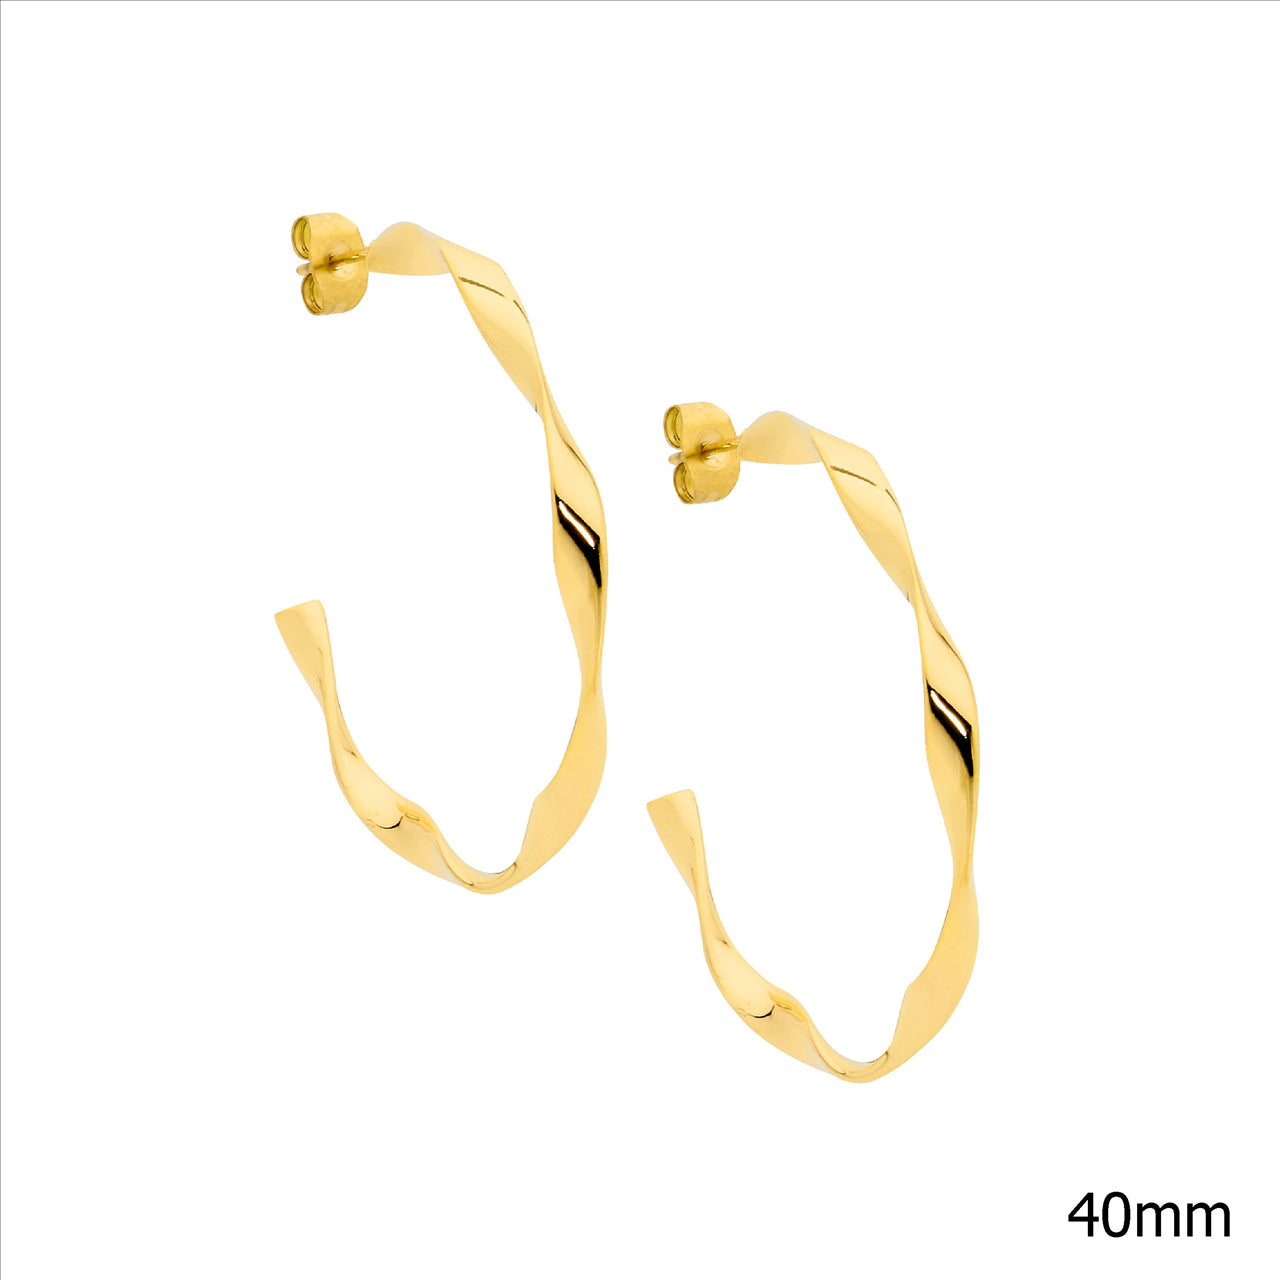 Stainless steel 4cm twist hoop earrings, gold IP plating